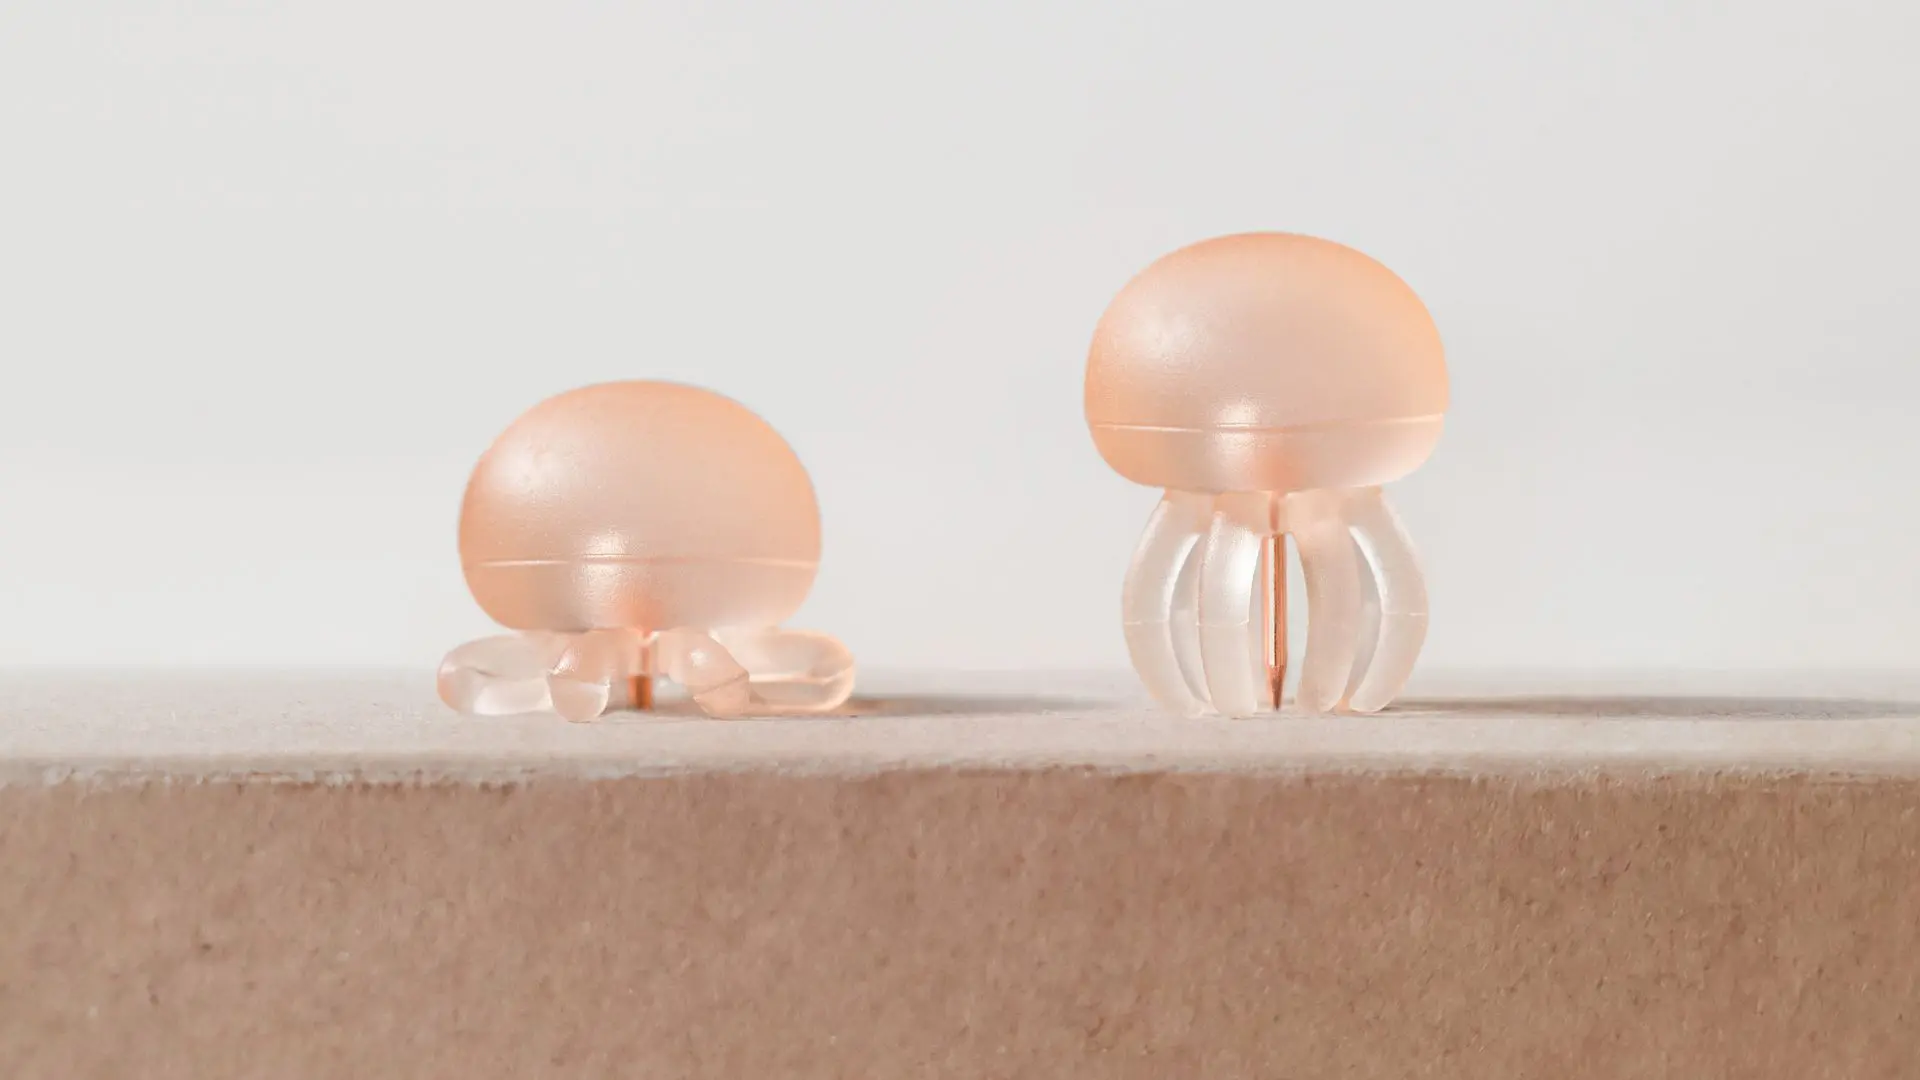 Jellyfish pushpin by Fabio Verdelli Milano - cover